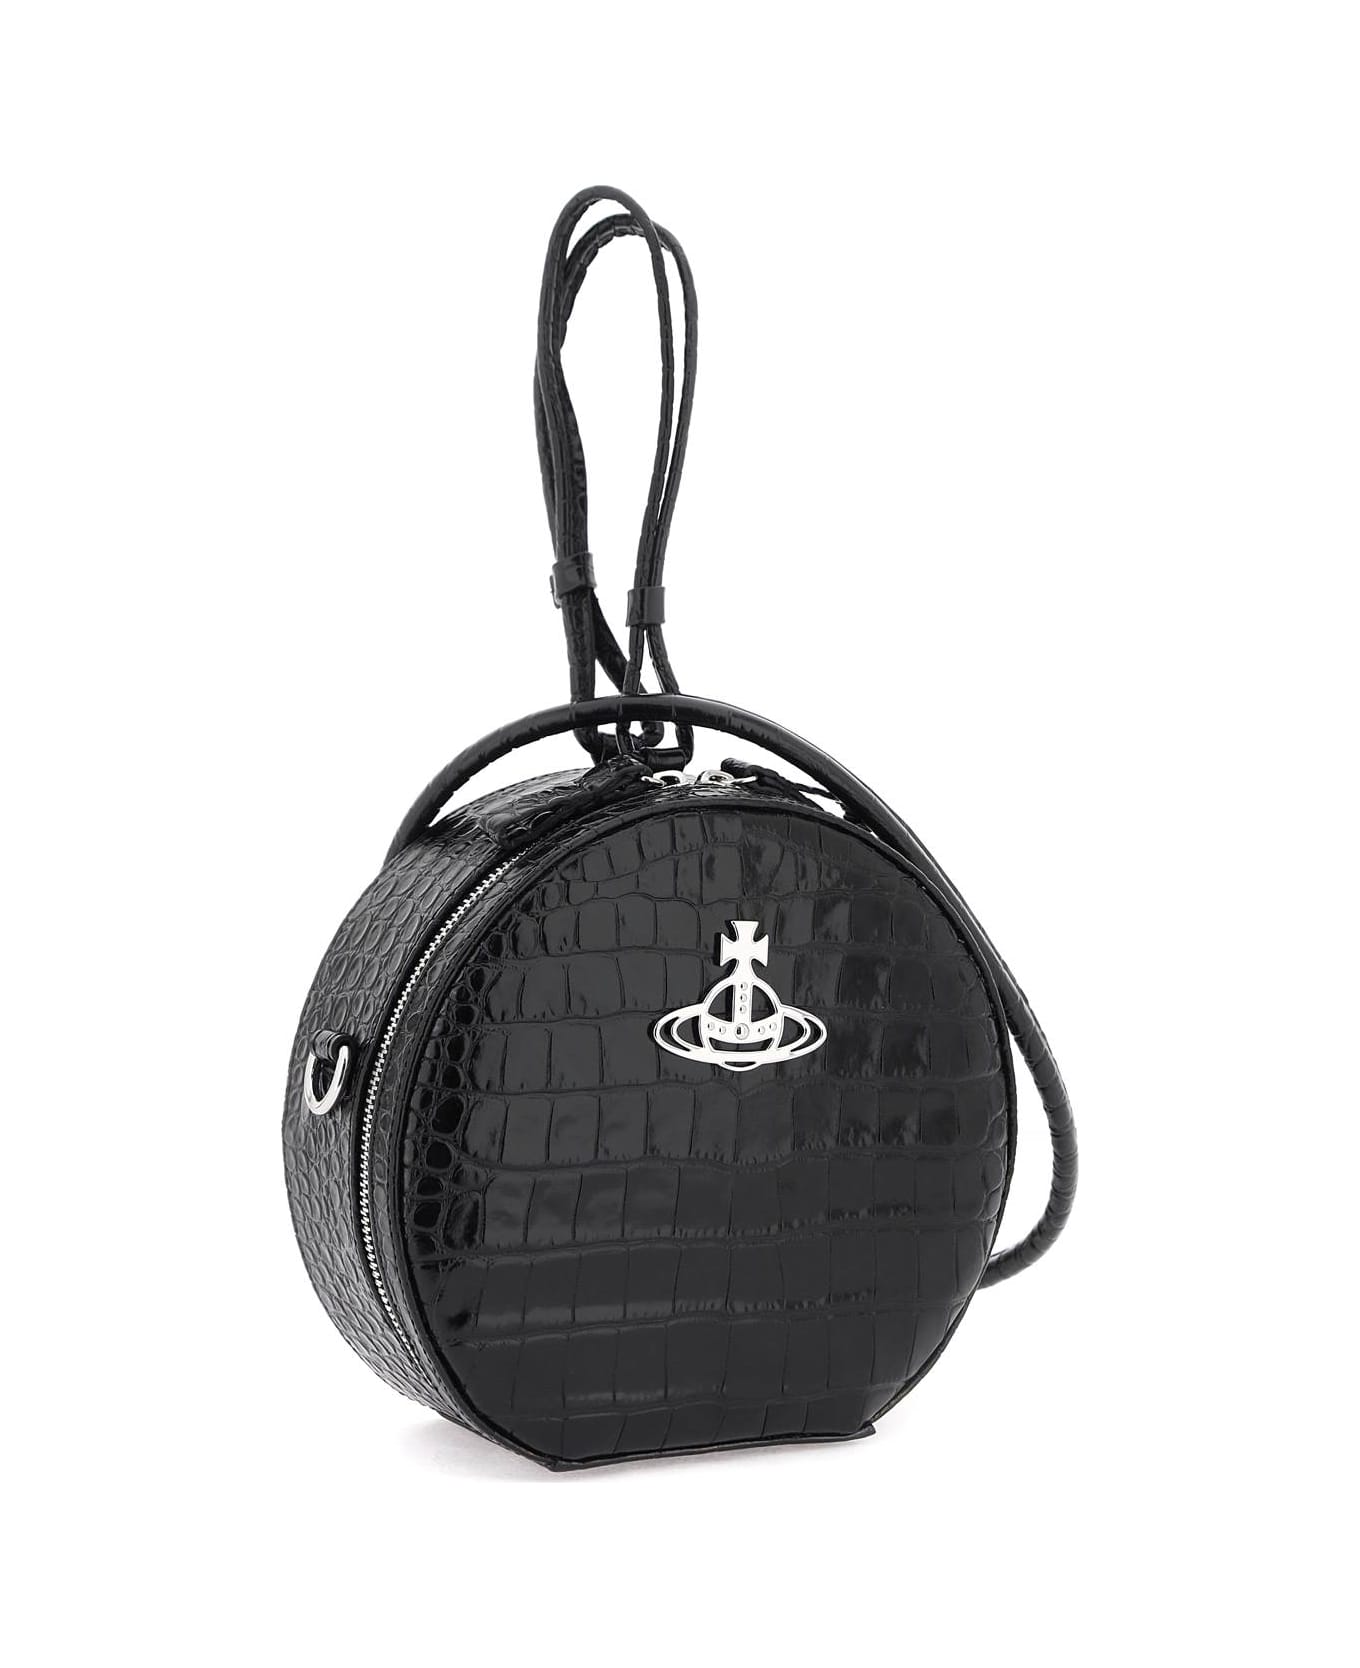 Vivienne Westwood Hattie Handbag - BLACK (Black) トートバッグ